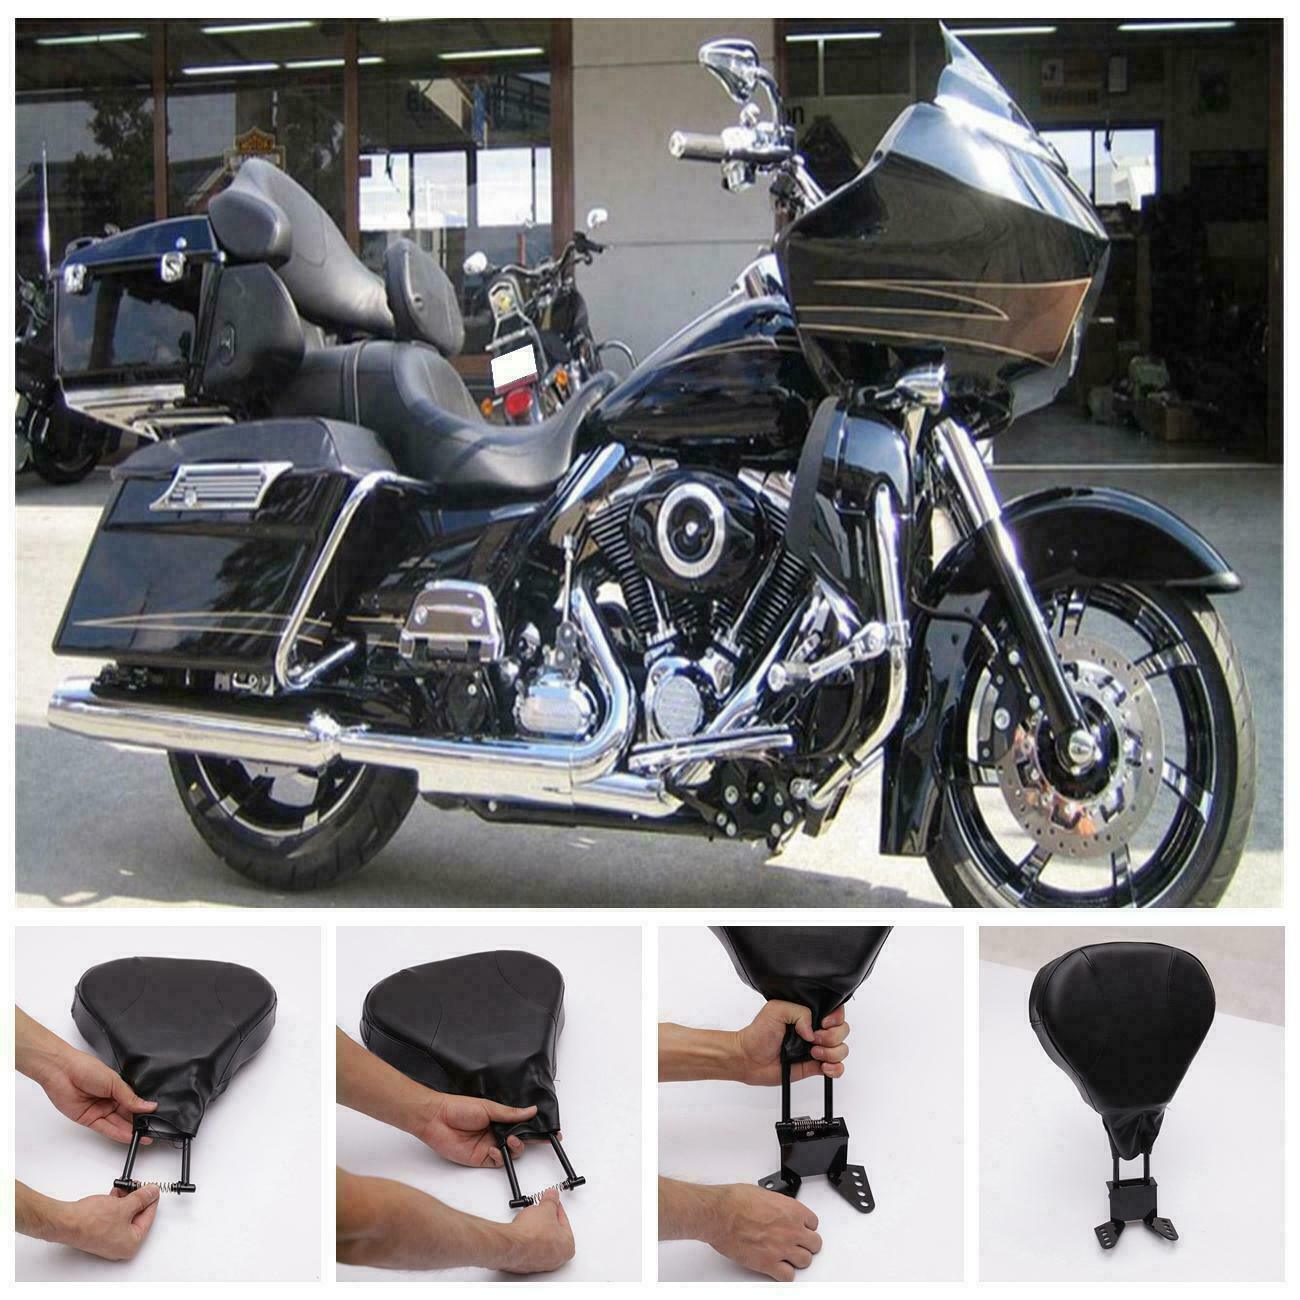 Adjustable Driver Rider Backrest Kits For Harley Davidson 09-21 Road King - Moto Life Products